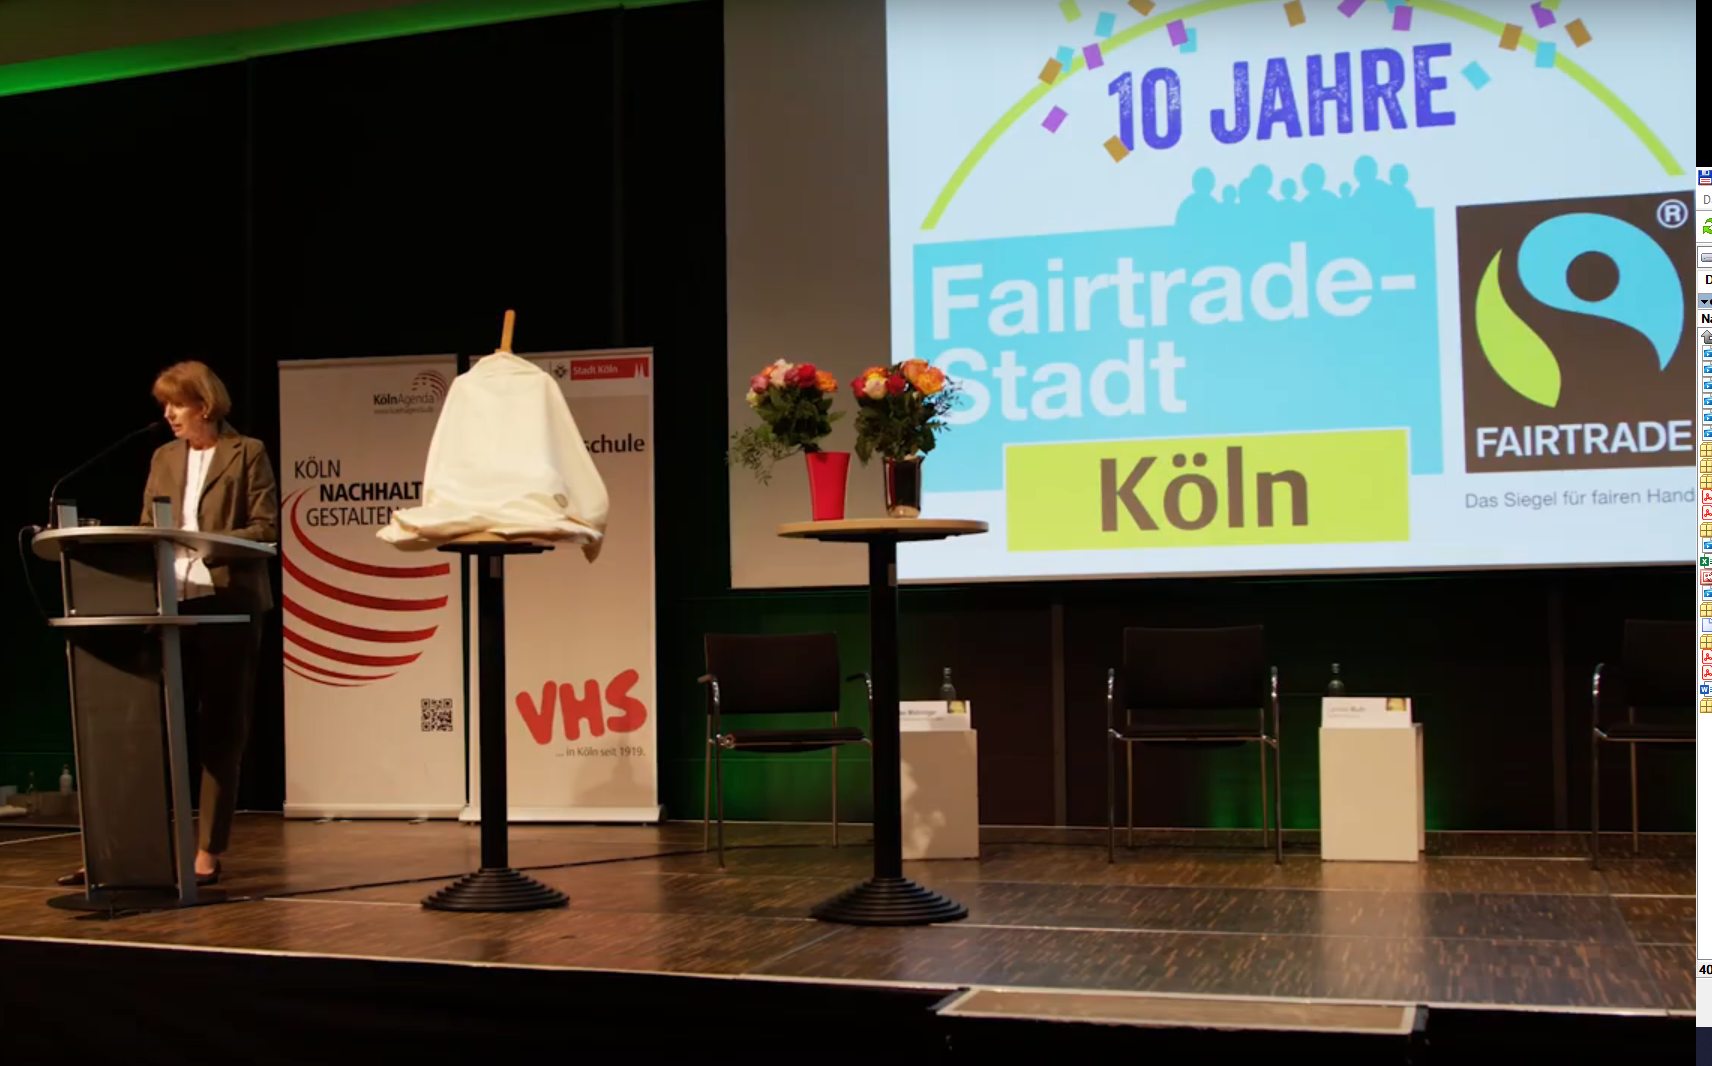 Eine Person spricht auf einer Bühne; rechts ist eingroßes Fair Trade-Logo zu sehen.